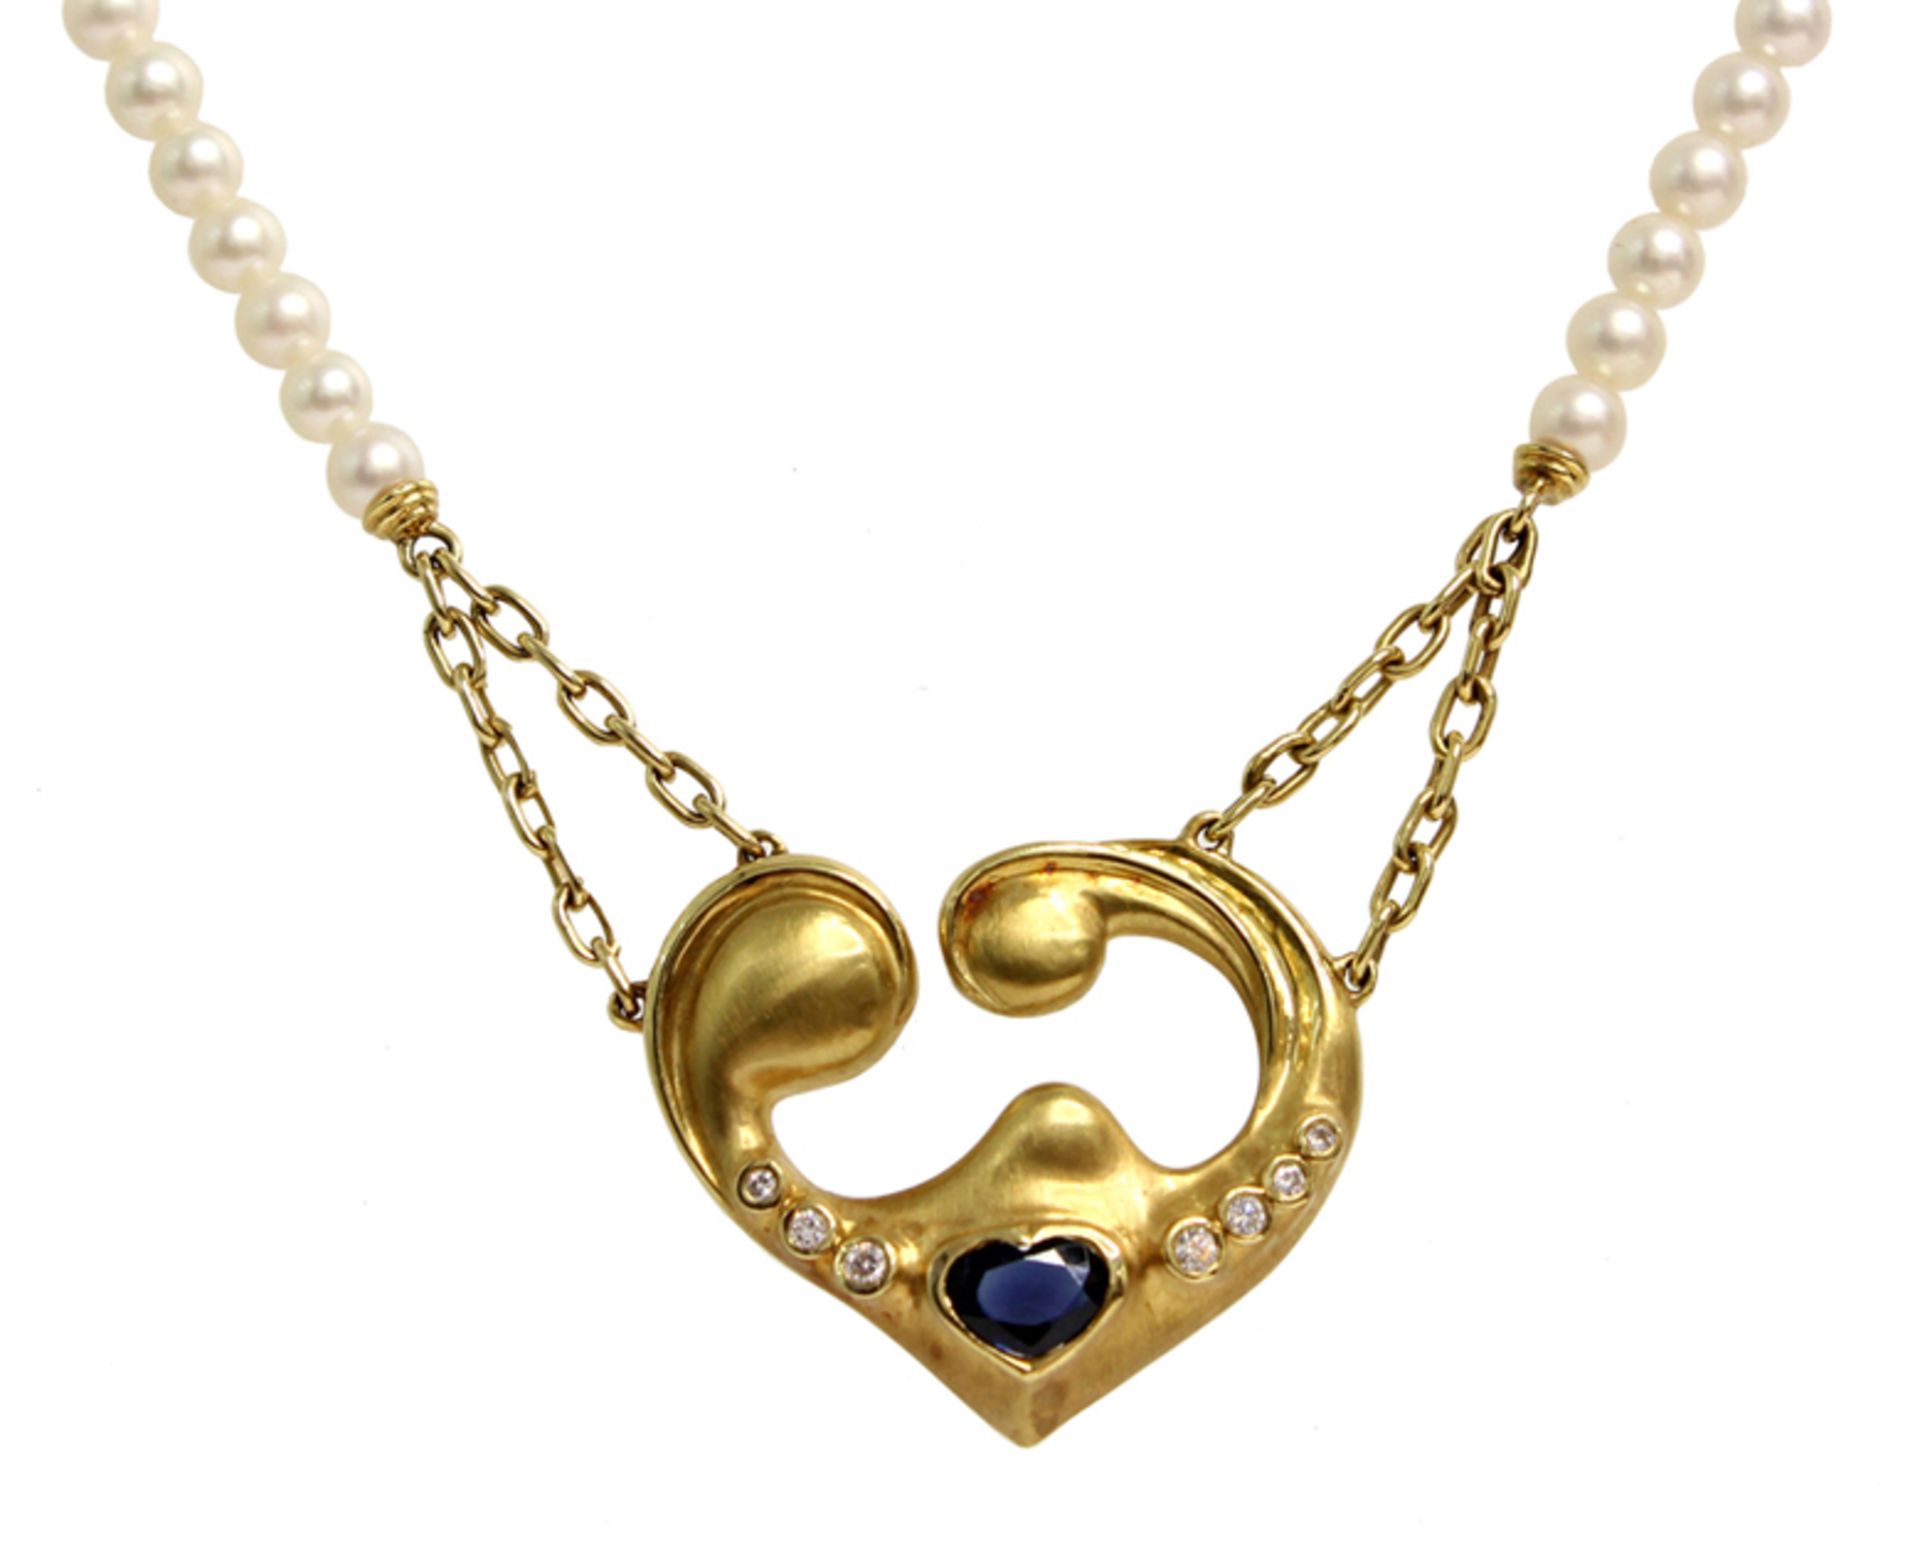 NECKLACE De perlas cultivadas, cierre de rosca en oro y colgante en forma de corazón con zafiro azul